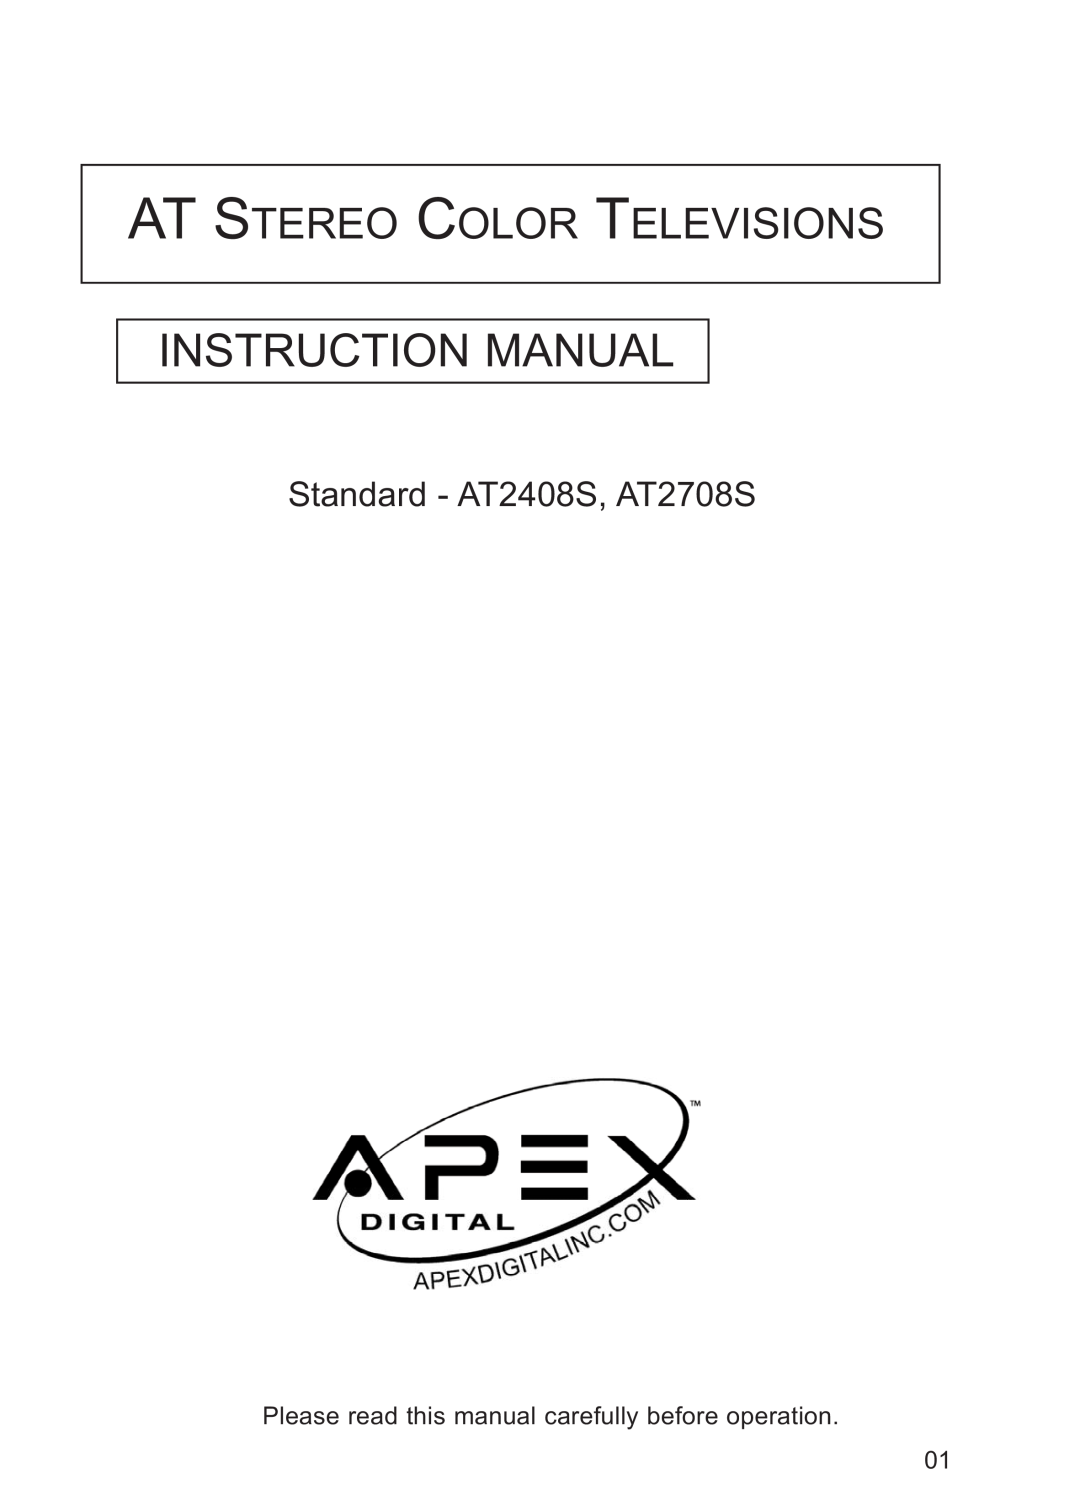 Apex Digital AT2708S, AT2408S, AT2408S, AT2708S instruction manual Instruction Manual, At Stereo Color Televisions 